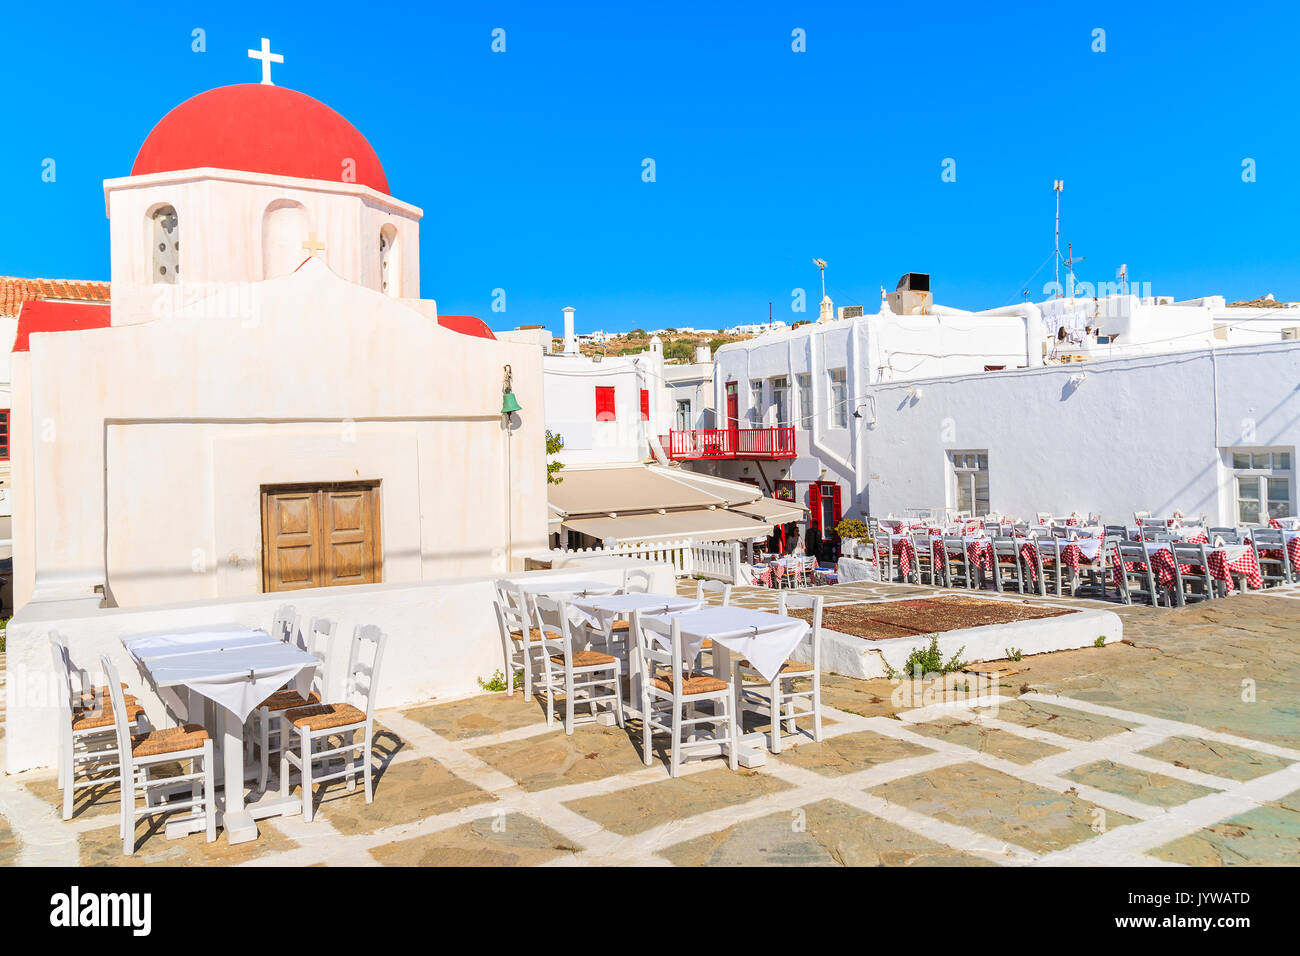 Typische Griechische weiße Kirche und Taverne Tabellen in der Stadt Mykonos, Insel, Griechenland Stockfoto